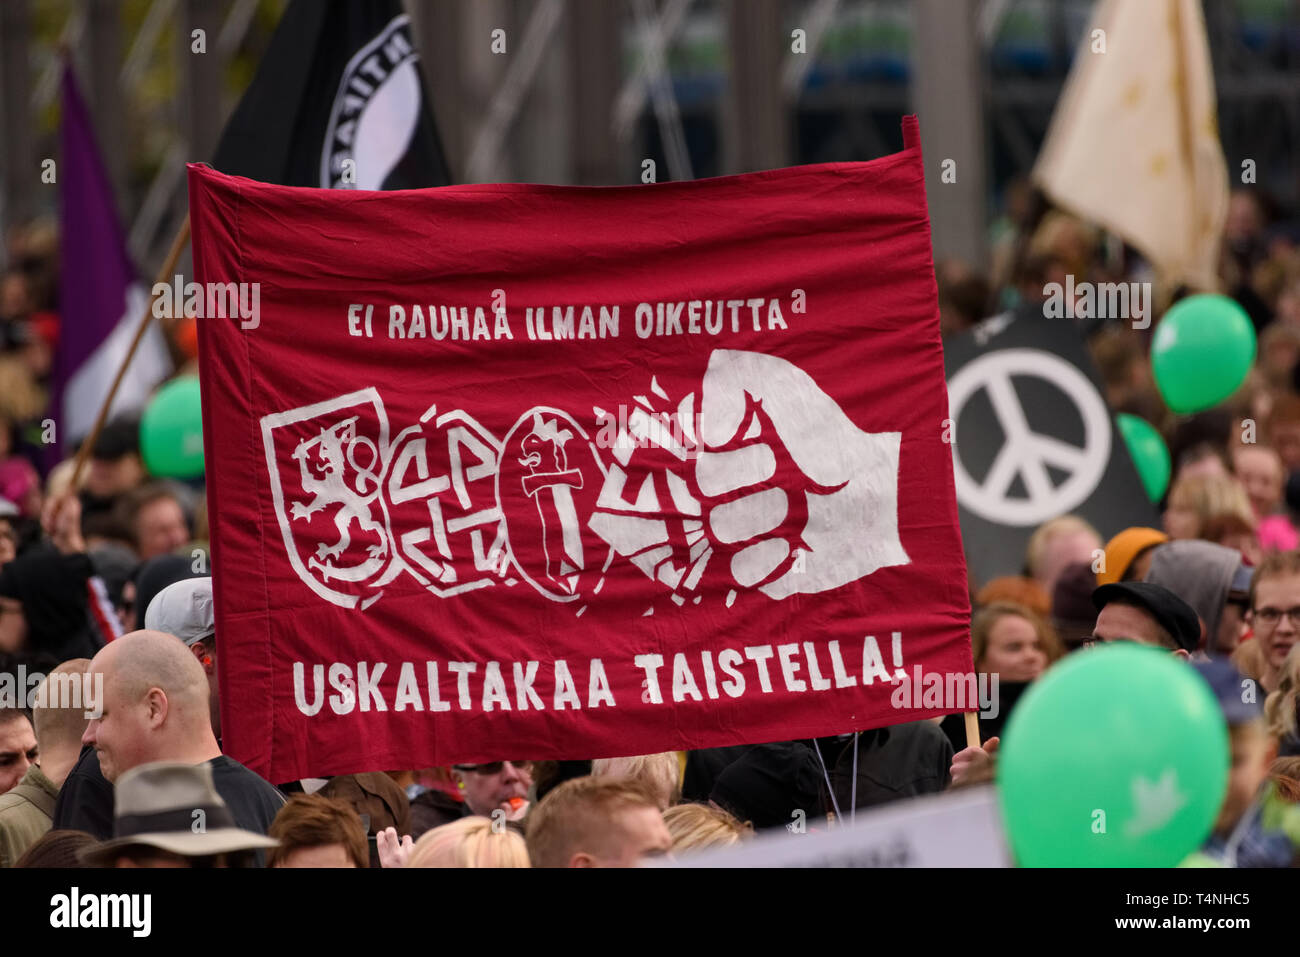 Helsinki, Finlandia - 24 Settembre 2016: Peli poikki - Rikotaan hiljaisuus - rally di protesta contro il razzismo e l'ala destra la violenza degli estremisti di Helsinki Foto Stock